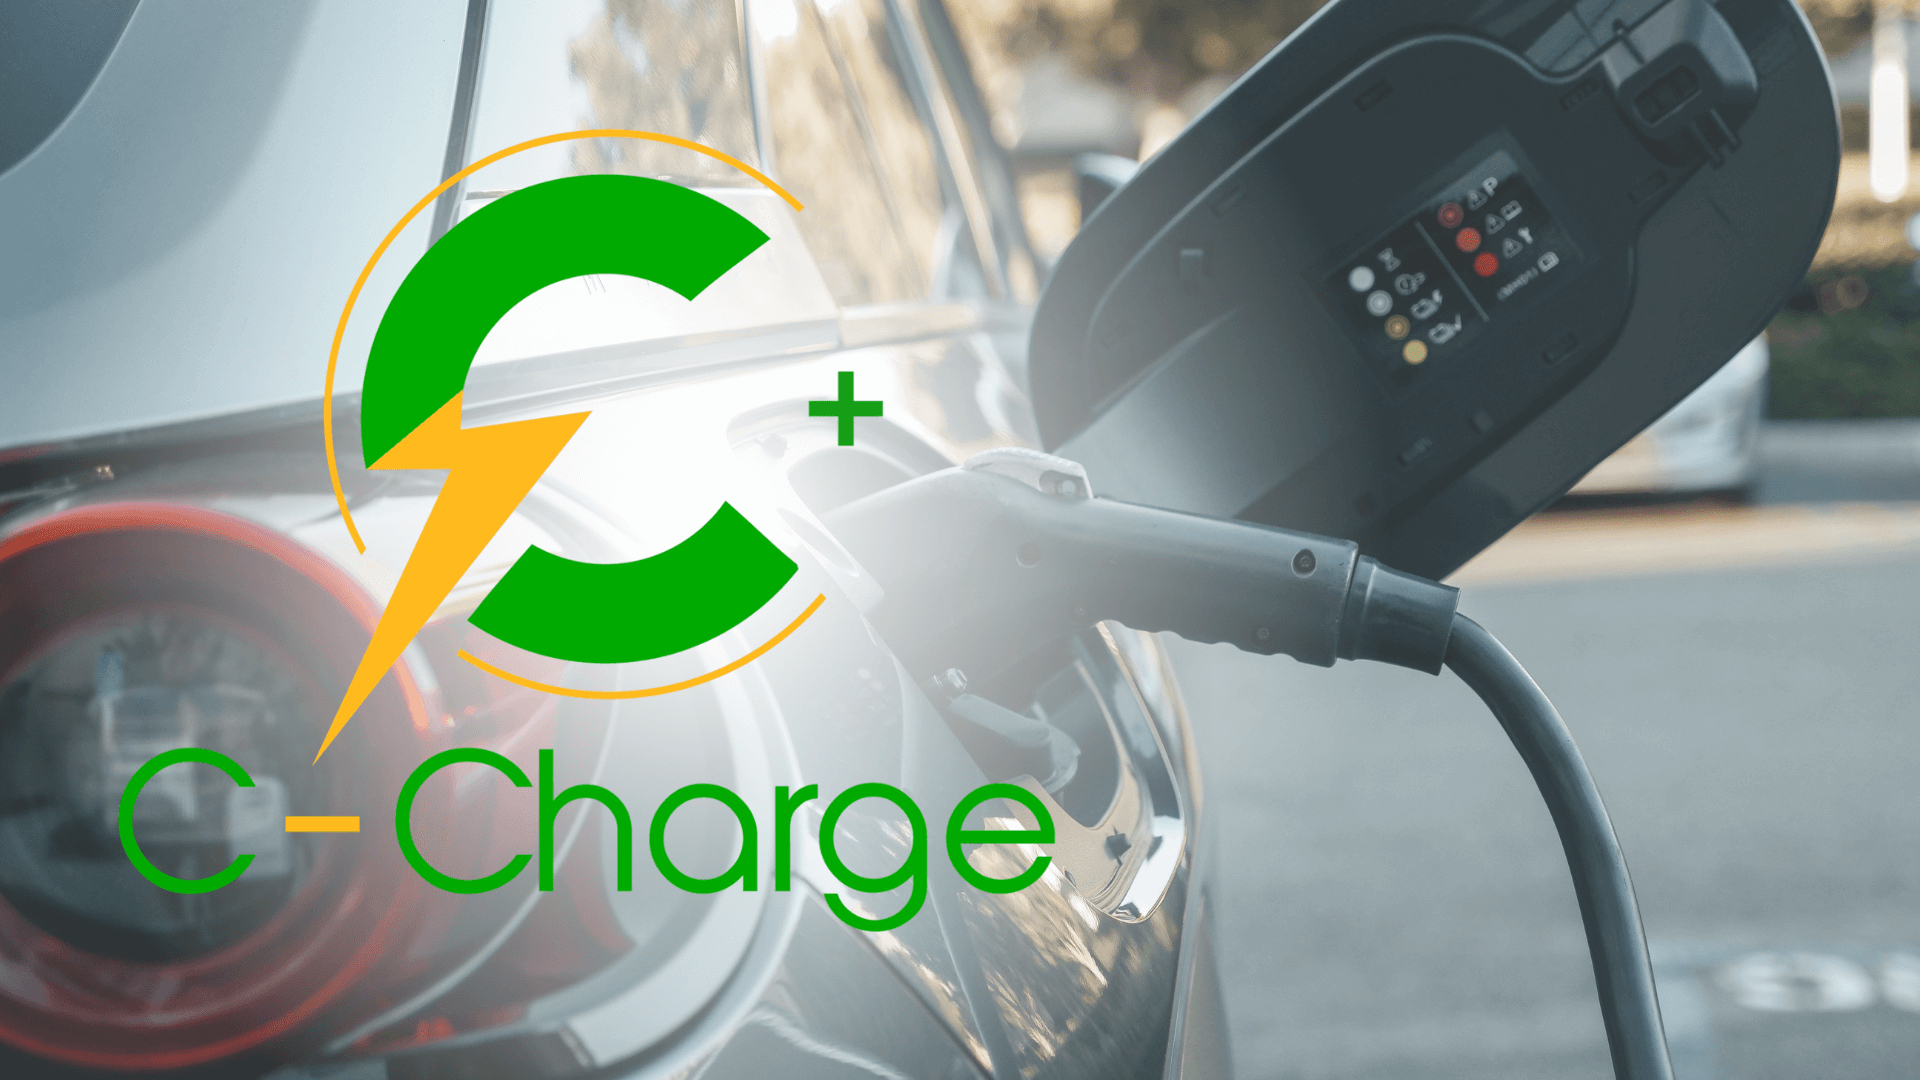 Uruguai avança na neutralização de CO2 com aumento na produção de carros elétricos. Mercado cripto segue a tendência com altcoin C+Charge.